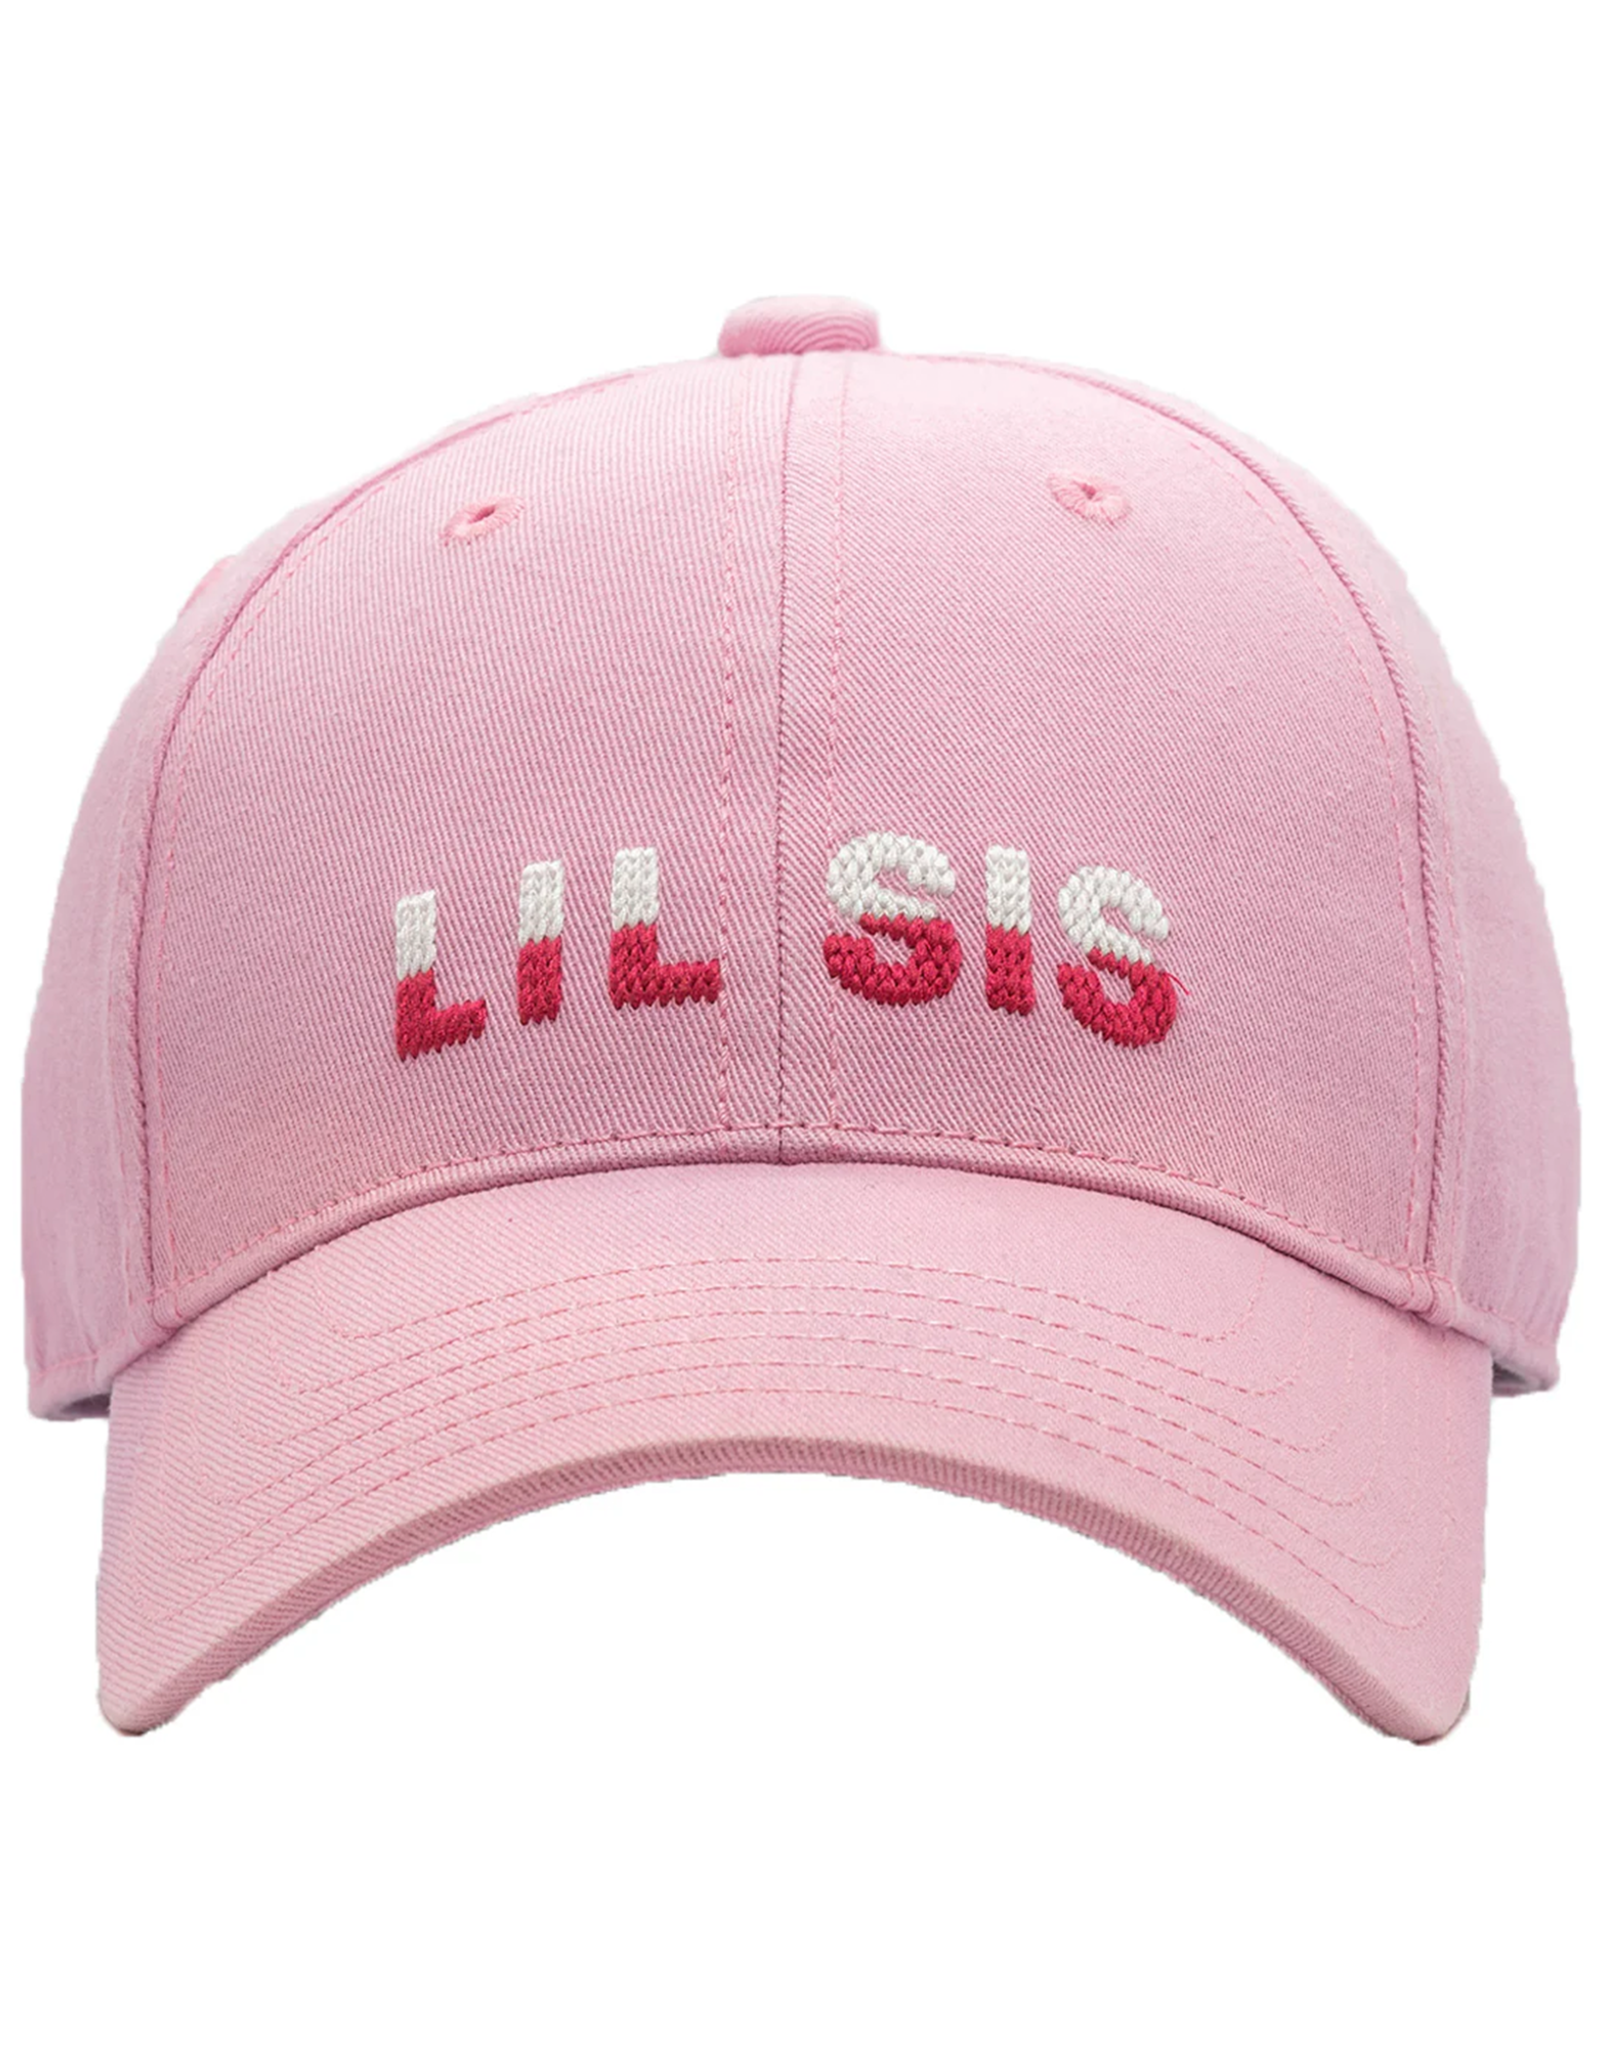 Harding Lane HL Embroidered Hat Lt. Pink Lil Sis